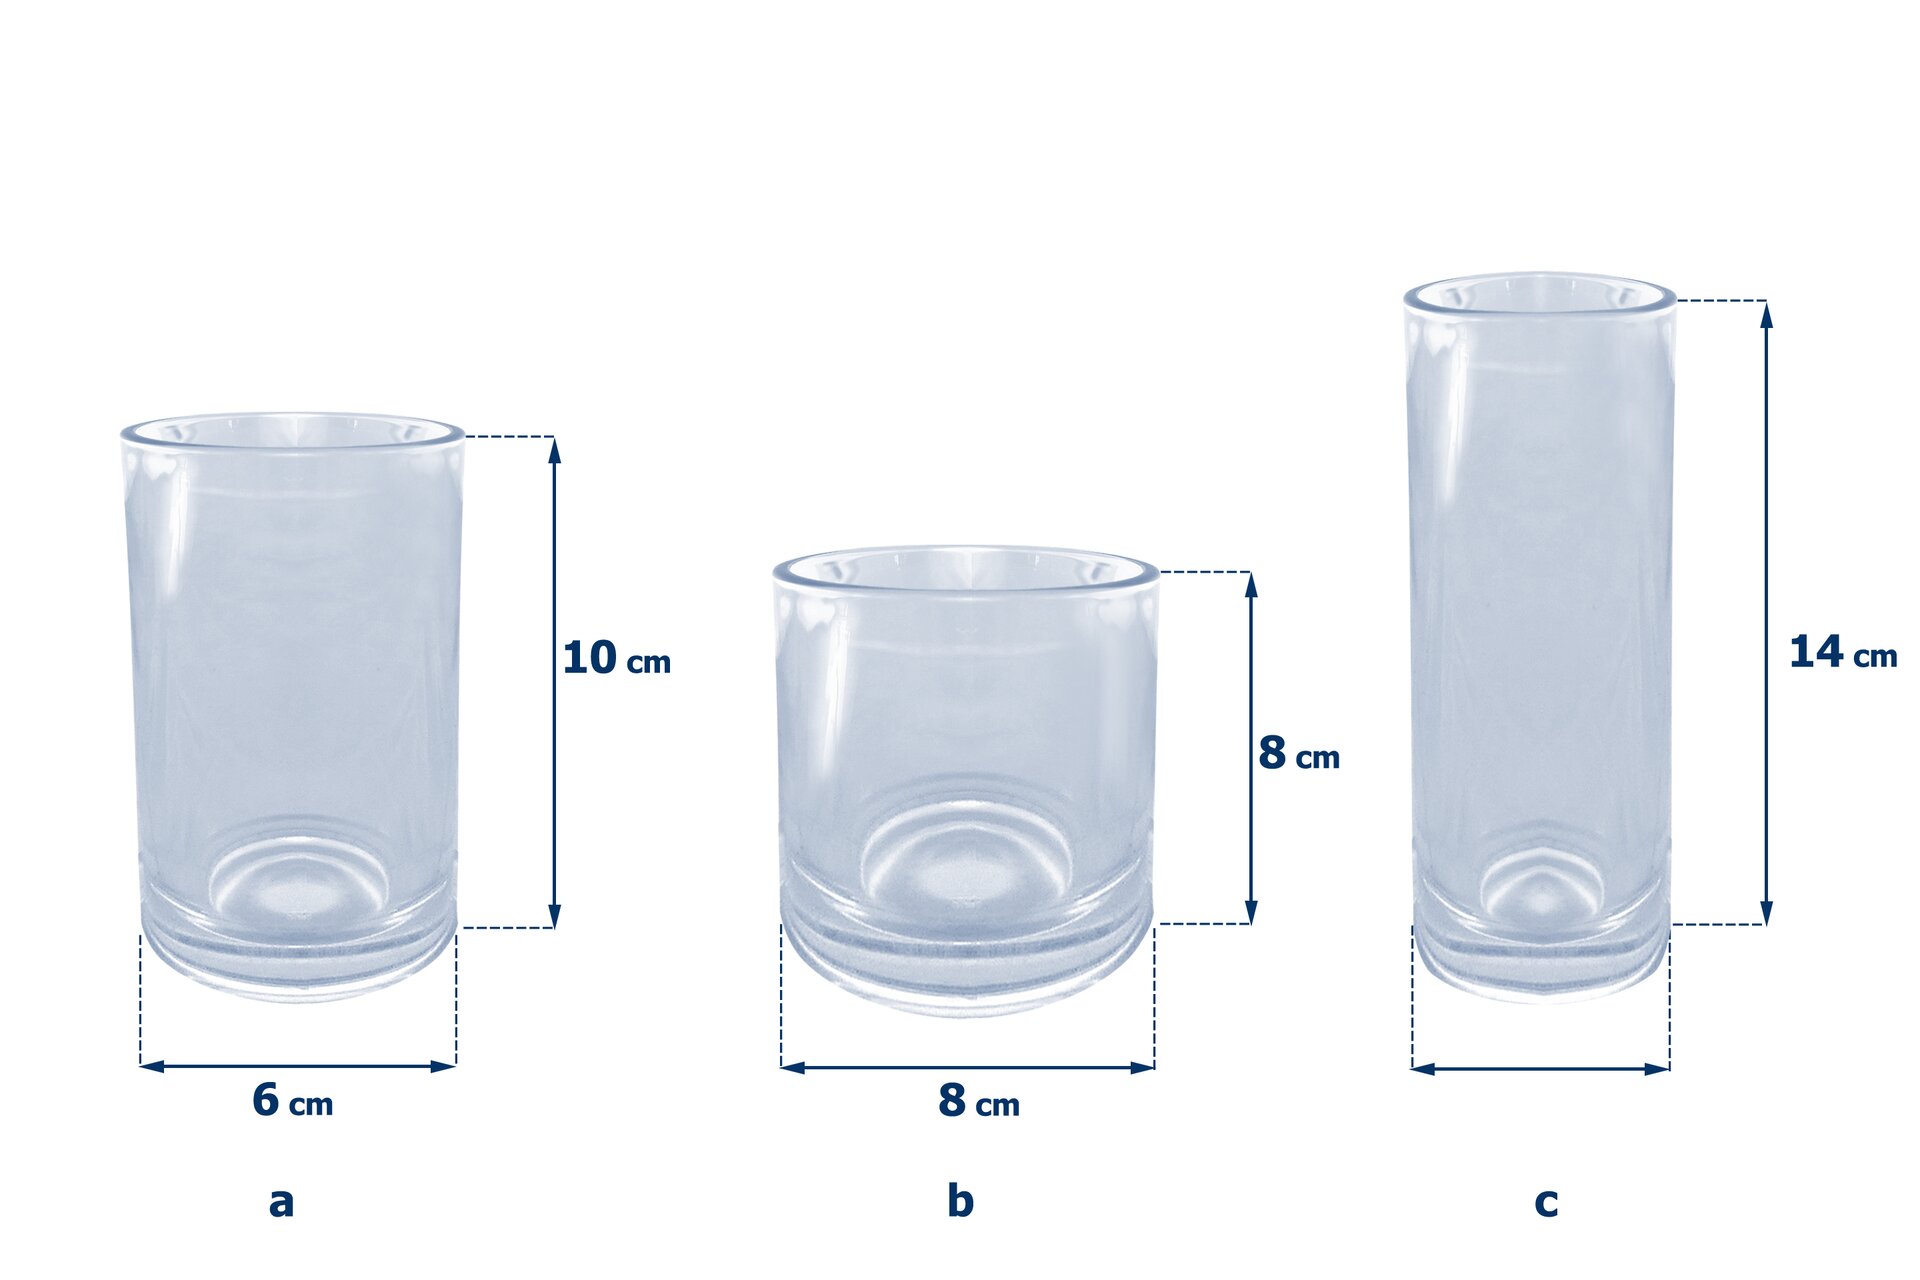 Rysunki trzech szklanek w kształcie walców. Pierwsza szklanka ma wysokość równą 10 cm i średnicę podstawy 6 cm. Druga szklanka ma wysokość równą 8 cm i średnicę podstawy 8 cm. Trzecia szklanka ma wysokość równą 14 cm i średnicę podstawy 4 cm.